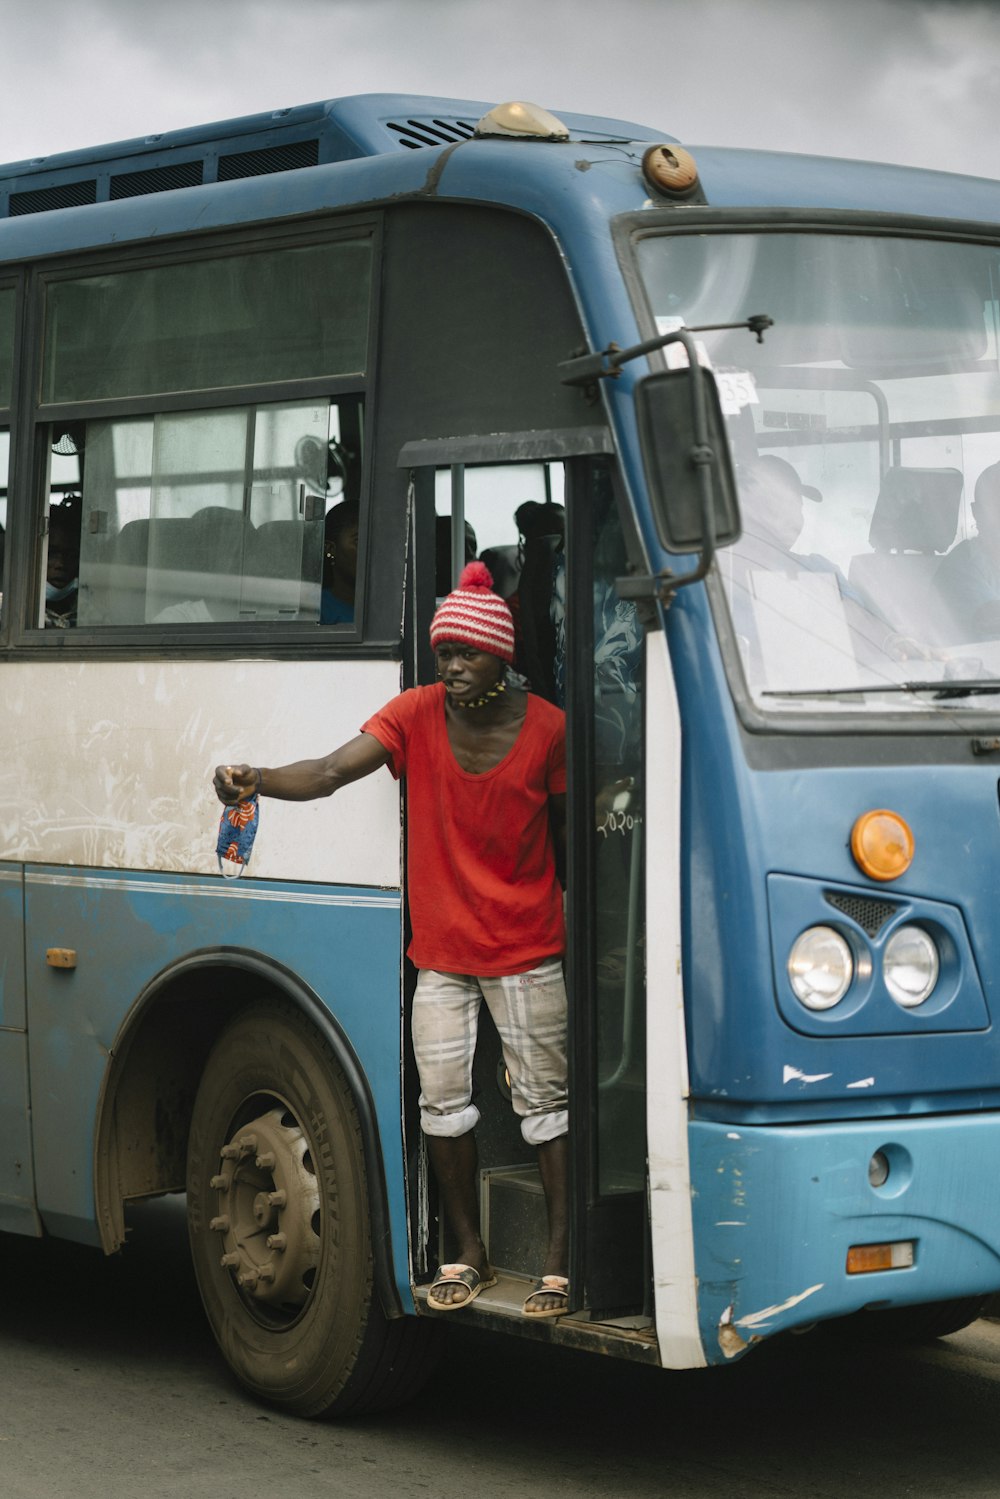 Mann in rotem T-Shirt und weißer Hose tagsüber vor blauem Bus